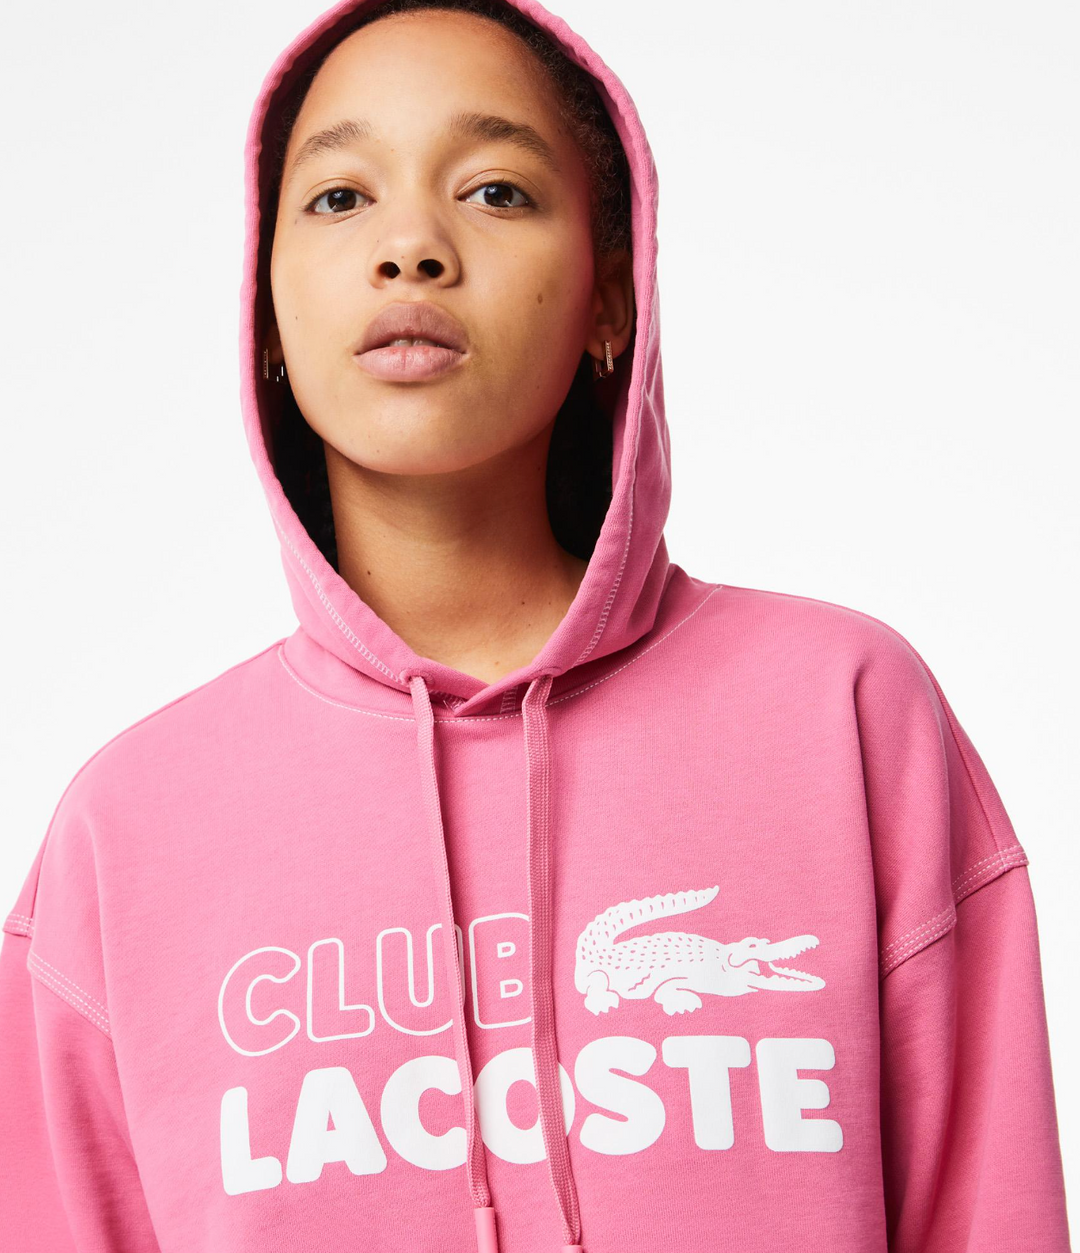 Lacoste Women Tennis Apparel Sweater Pink SF5598